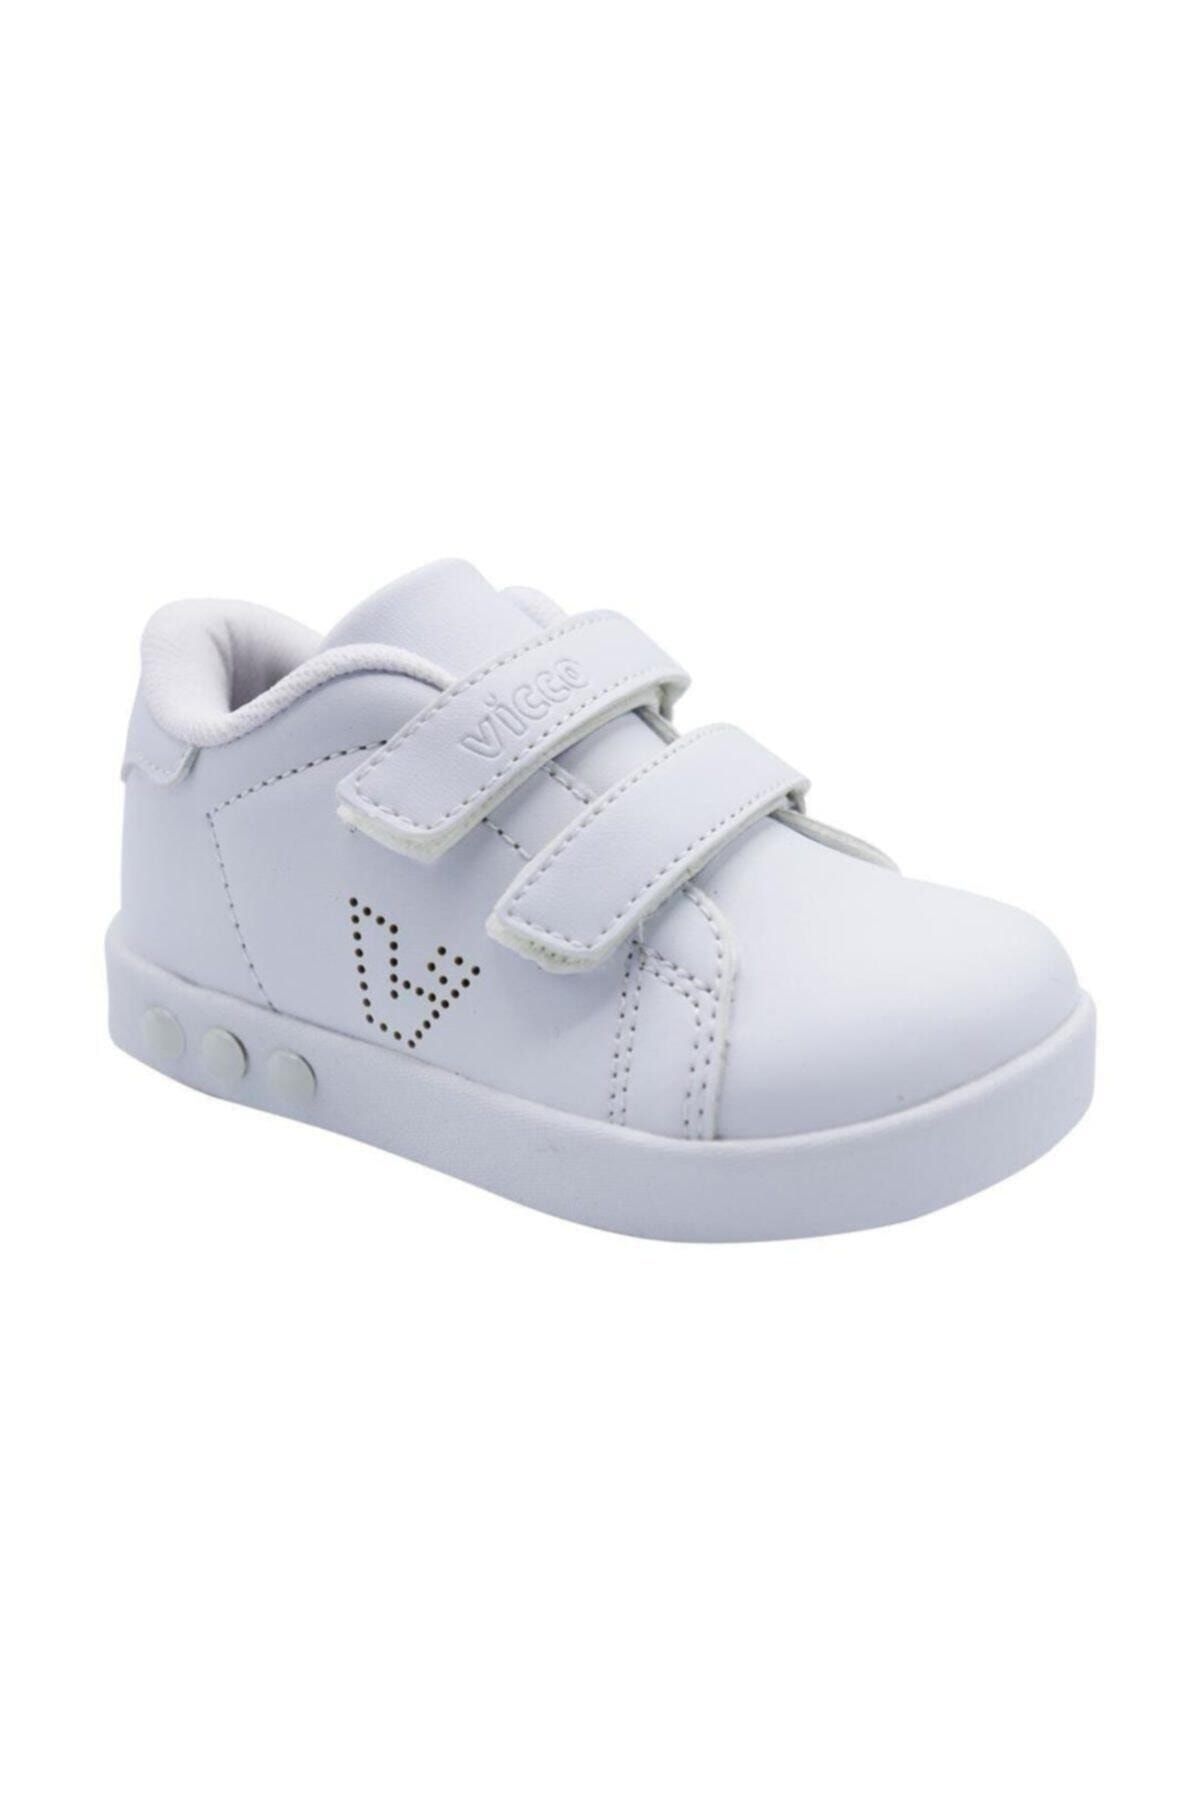 Vicco 313.P19K.100-11 Beyaz Kız Çocuk Yürüyüş Ayakkabısı 100578850